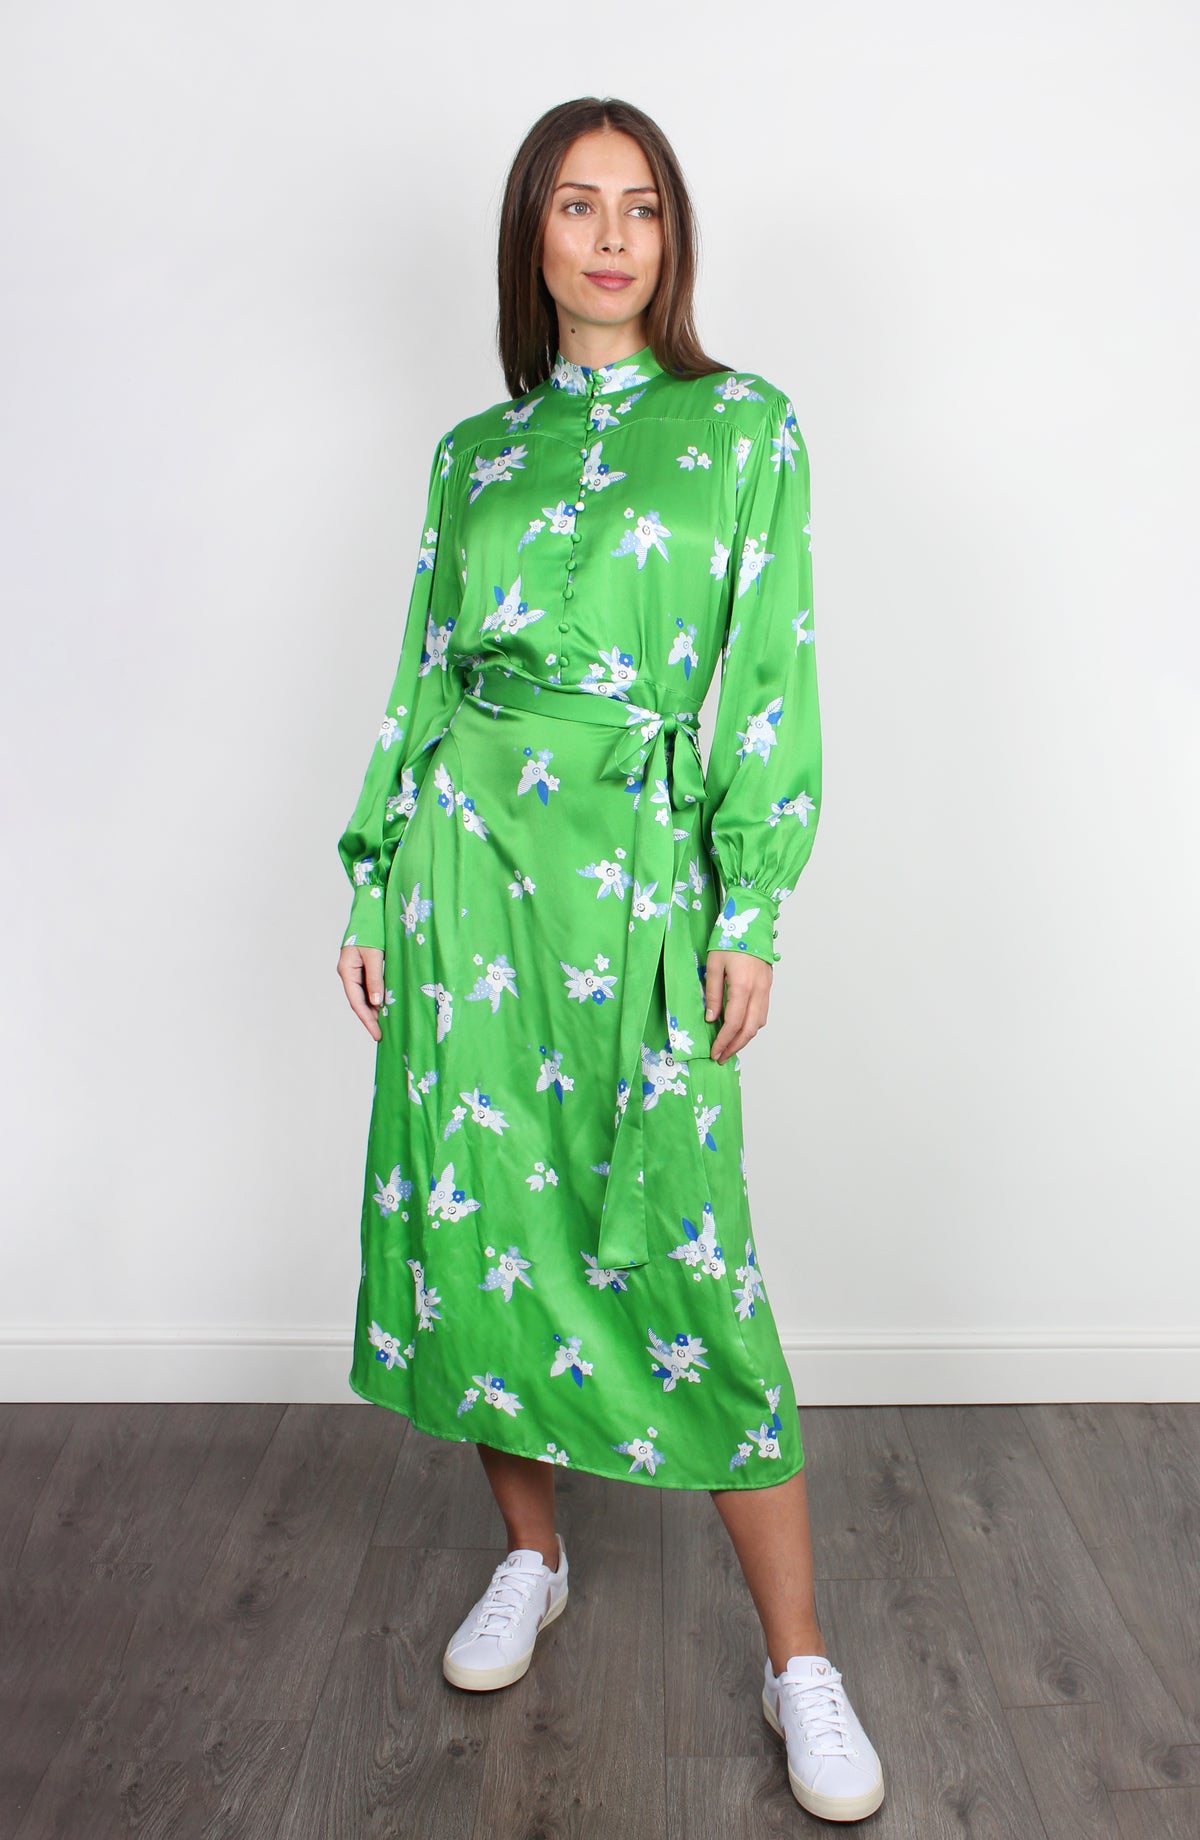 PPL Dotty Dress in Pixie 03 in Green